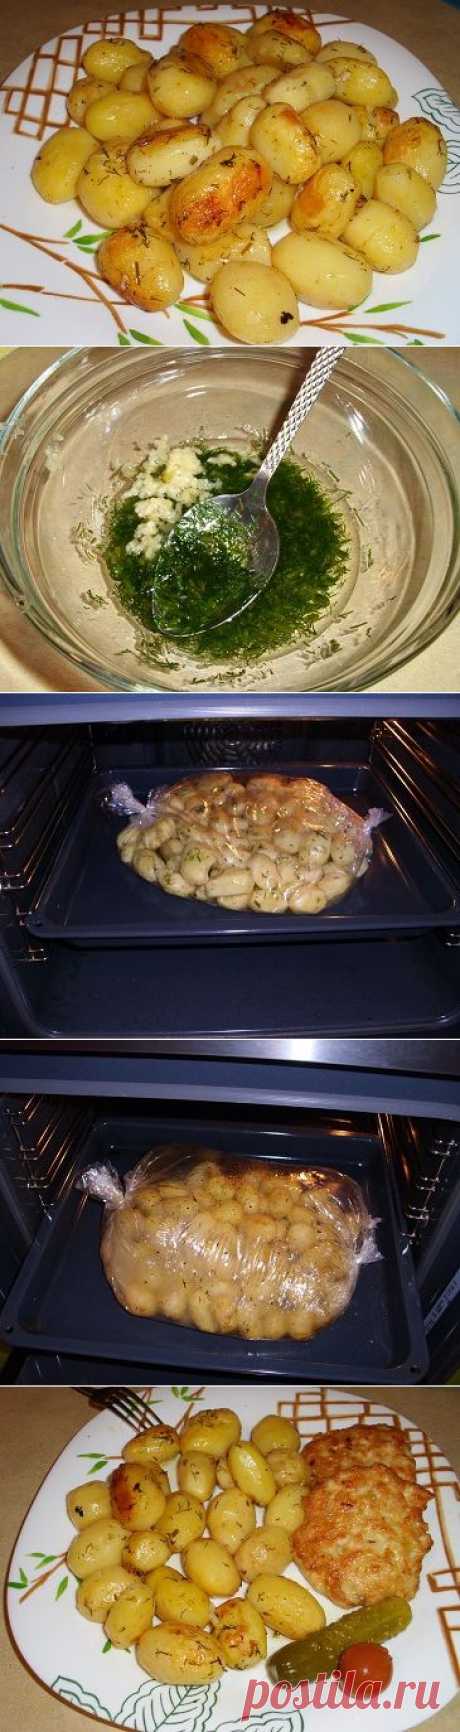 Картофель - быстро, вкусно, красиво! и посуду мыть не надо!) - Простые рецепты Овкусе.ру